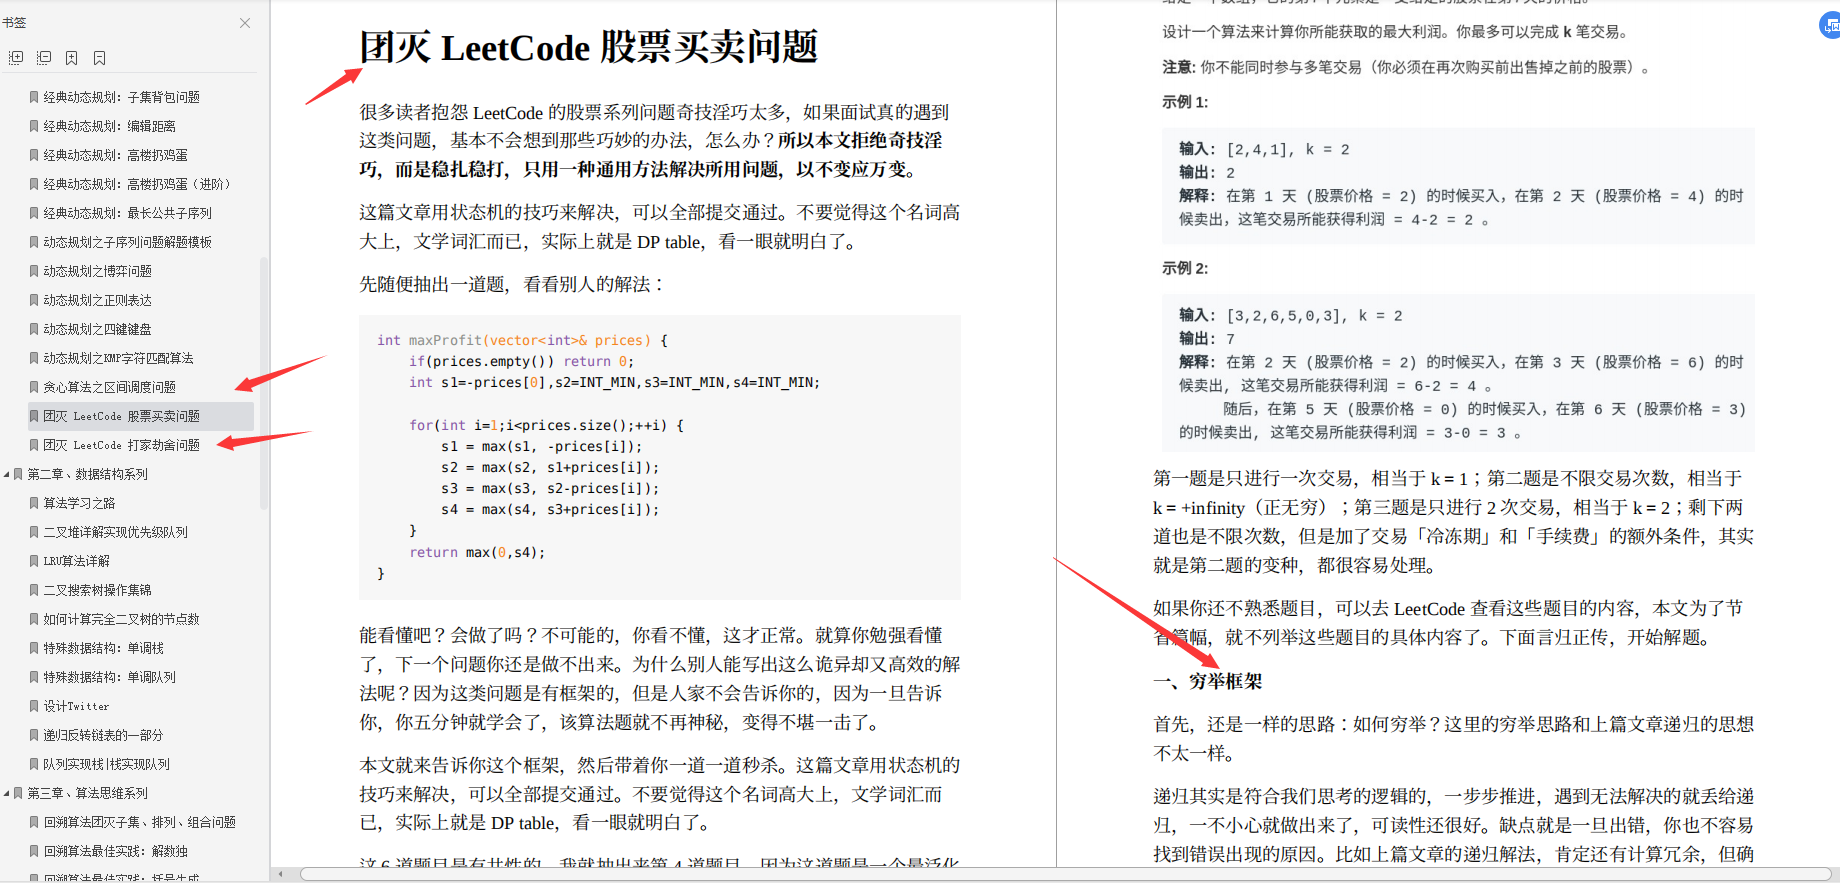 El primer lanzamiento de Alibaba: libro de algoritmos de nivel maestro, suficiente para destruir LeetCode